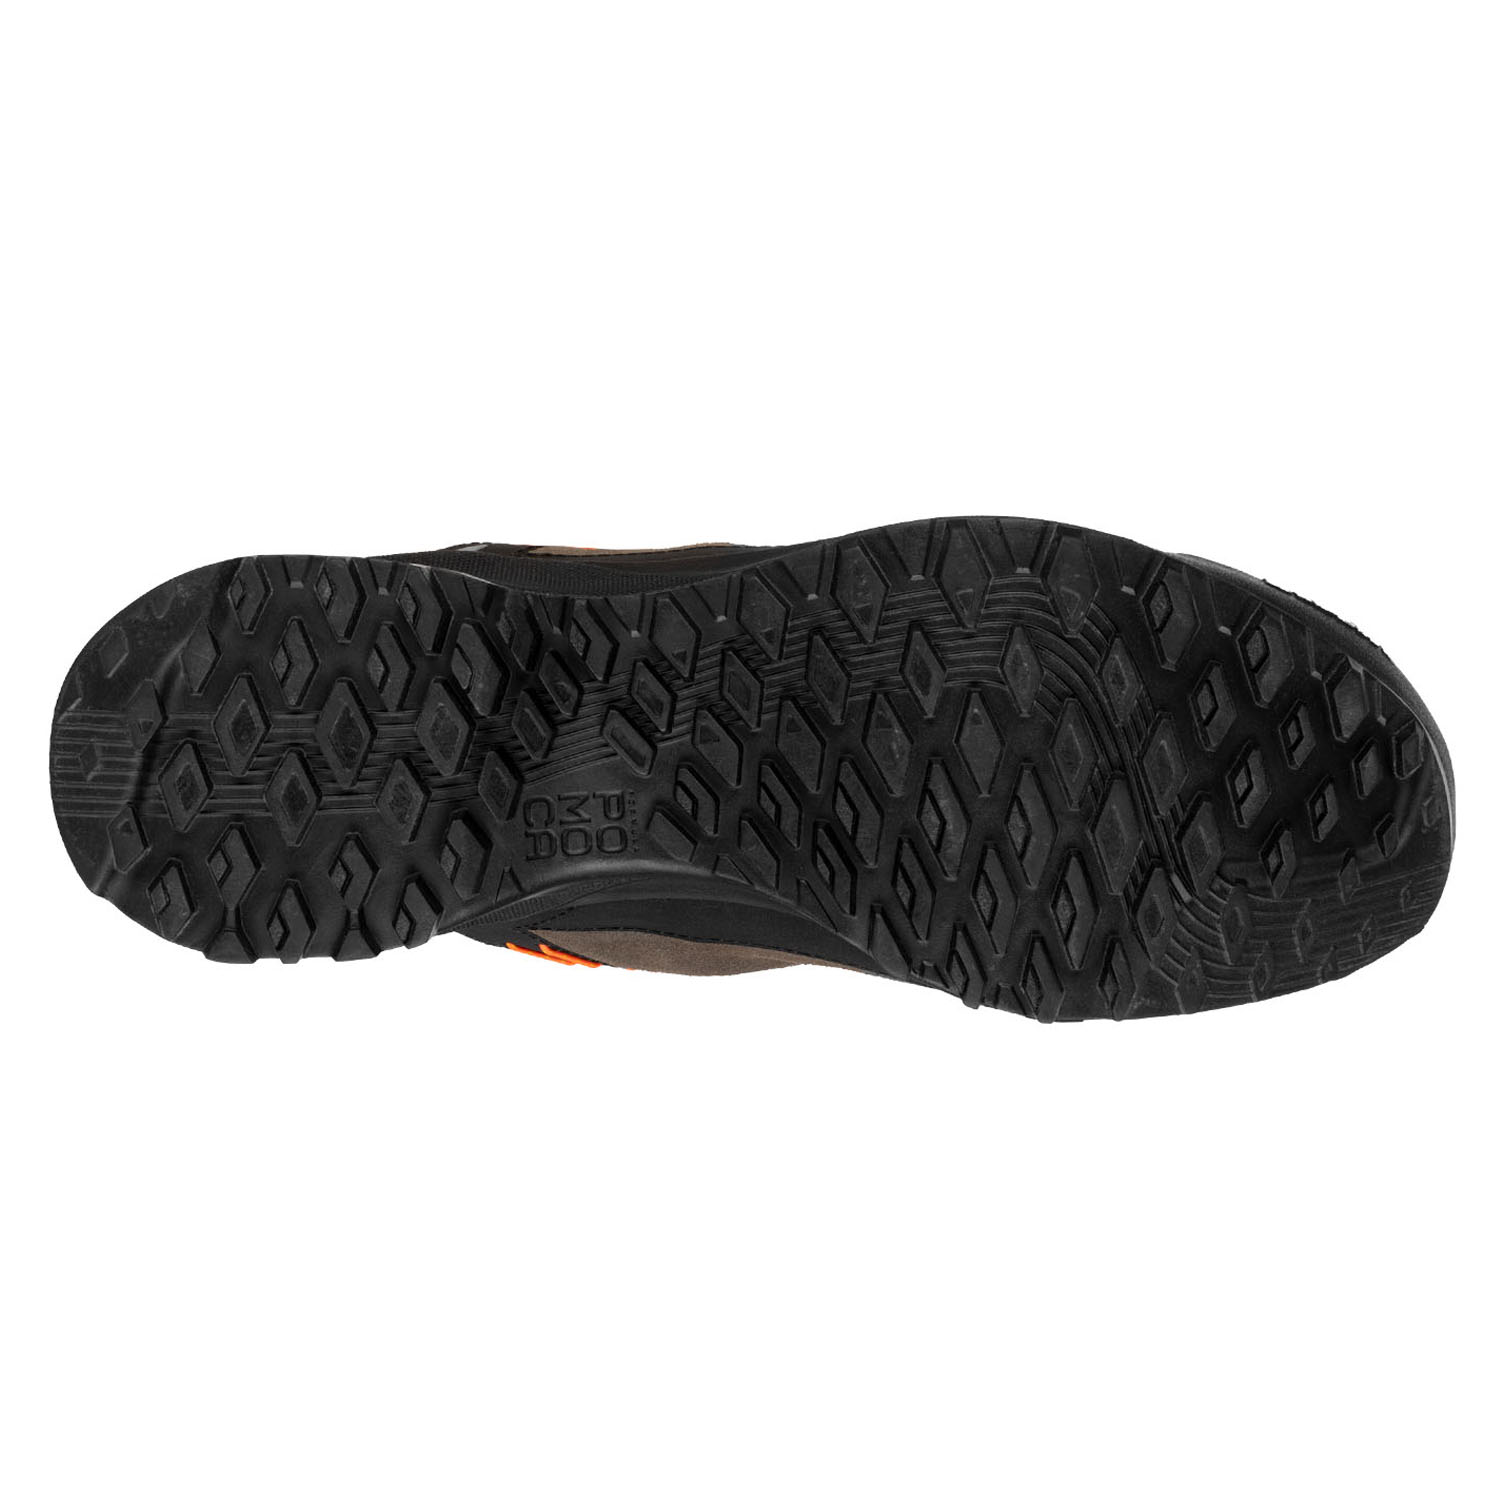 Ботинки Salewa Wildfire Leather Gtx M Bungee Cord/Black